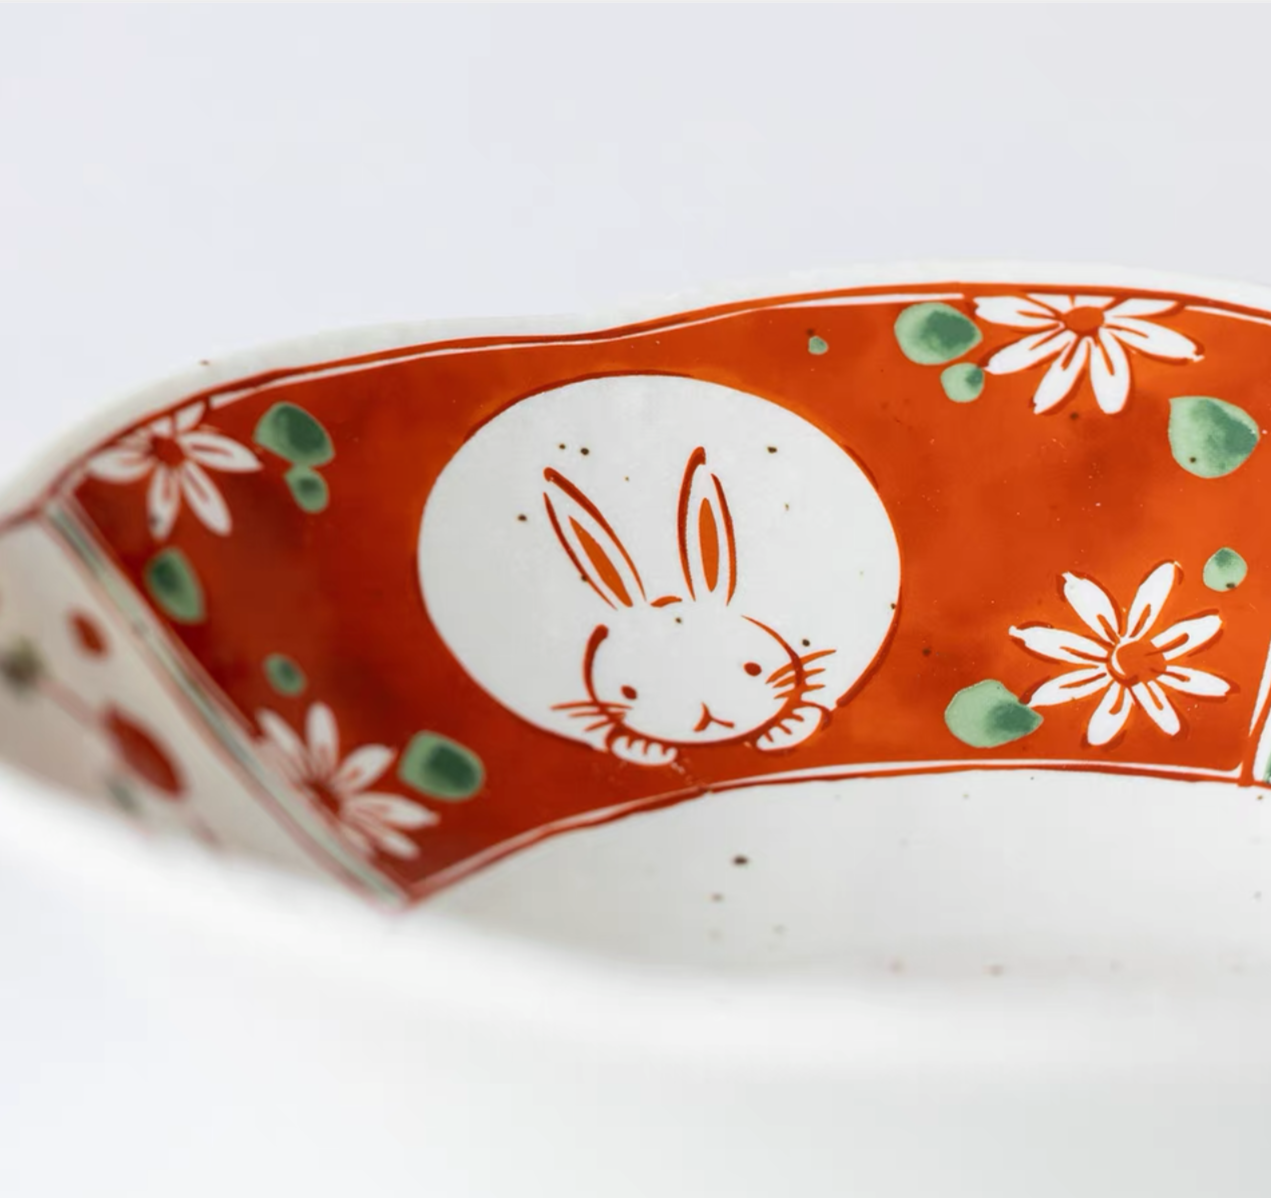 5 Piece Festive Minoyaki Peeking Usagi Bunny Serving Dish